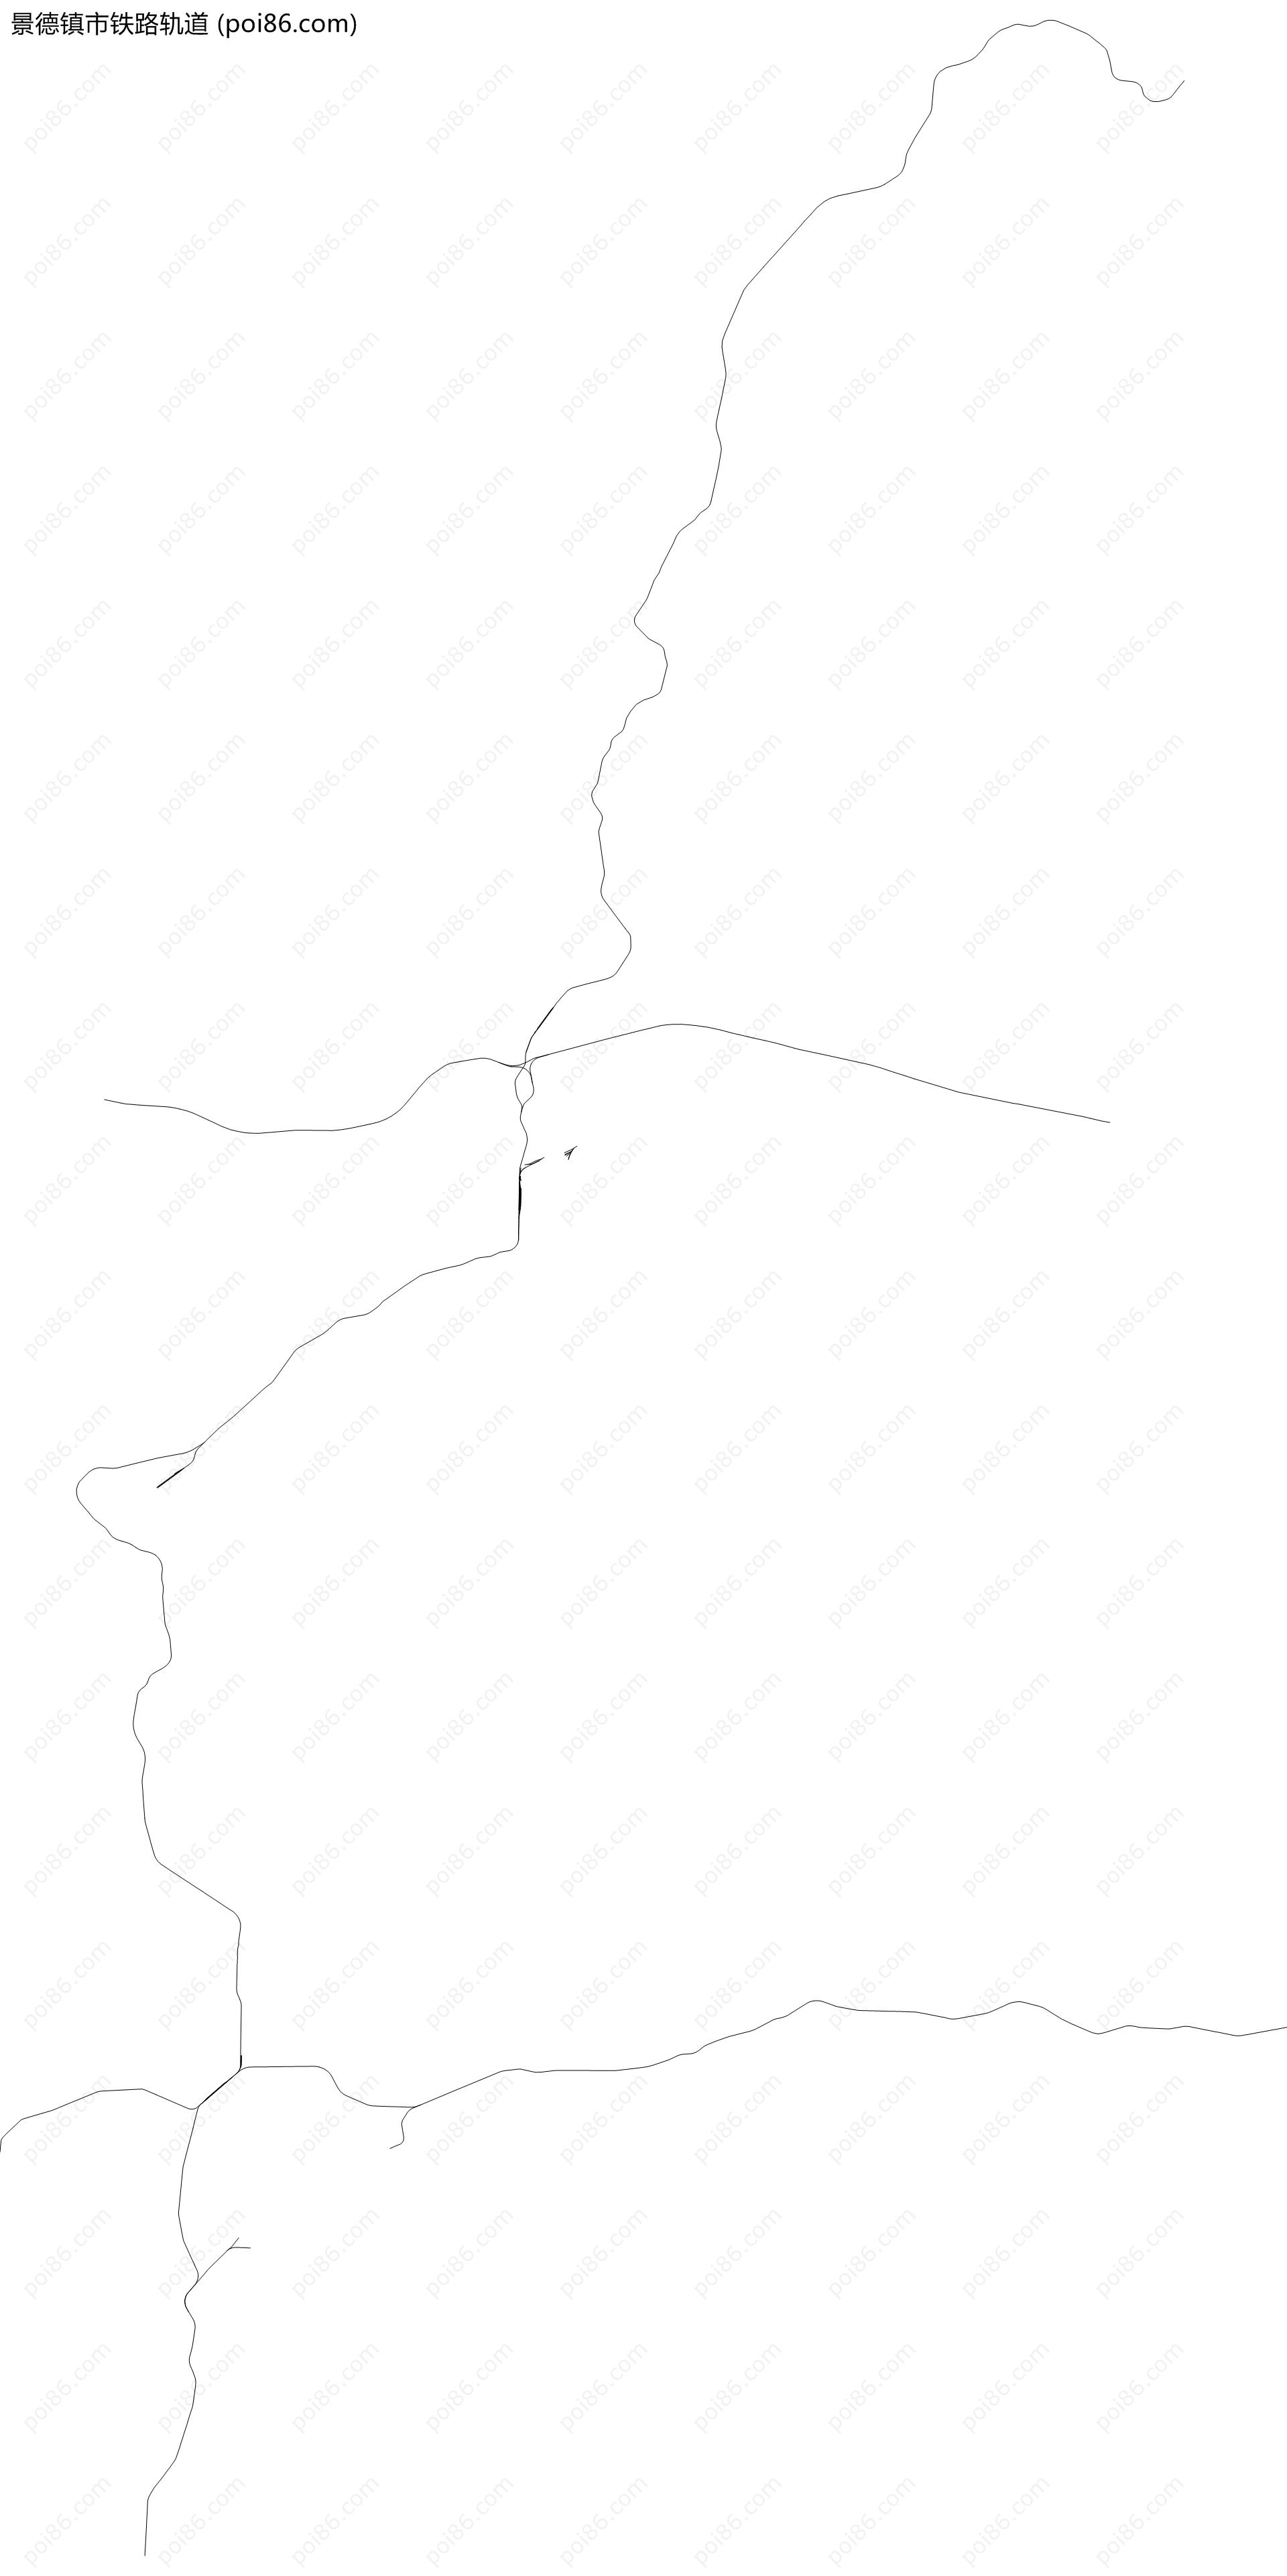 景德镇市铁路轨道地图